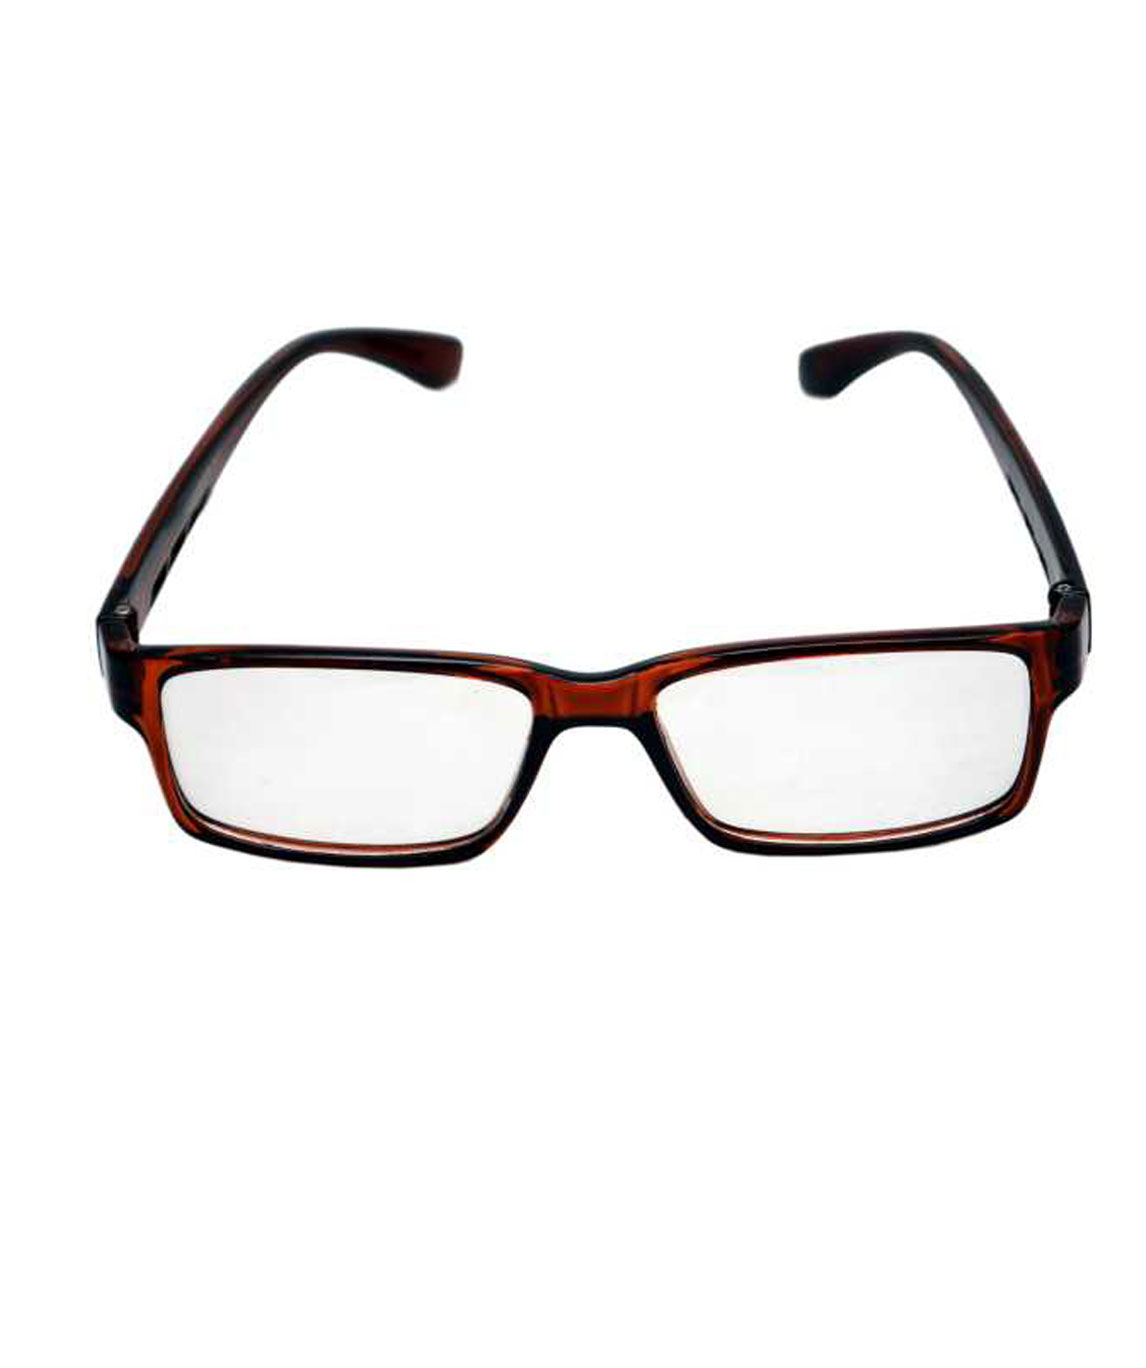 UV Protection Retro Square Sunglasses | Square sunglasses, Uv protection,  Fashion sunglasses